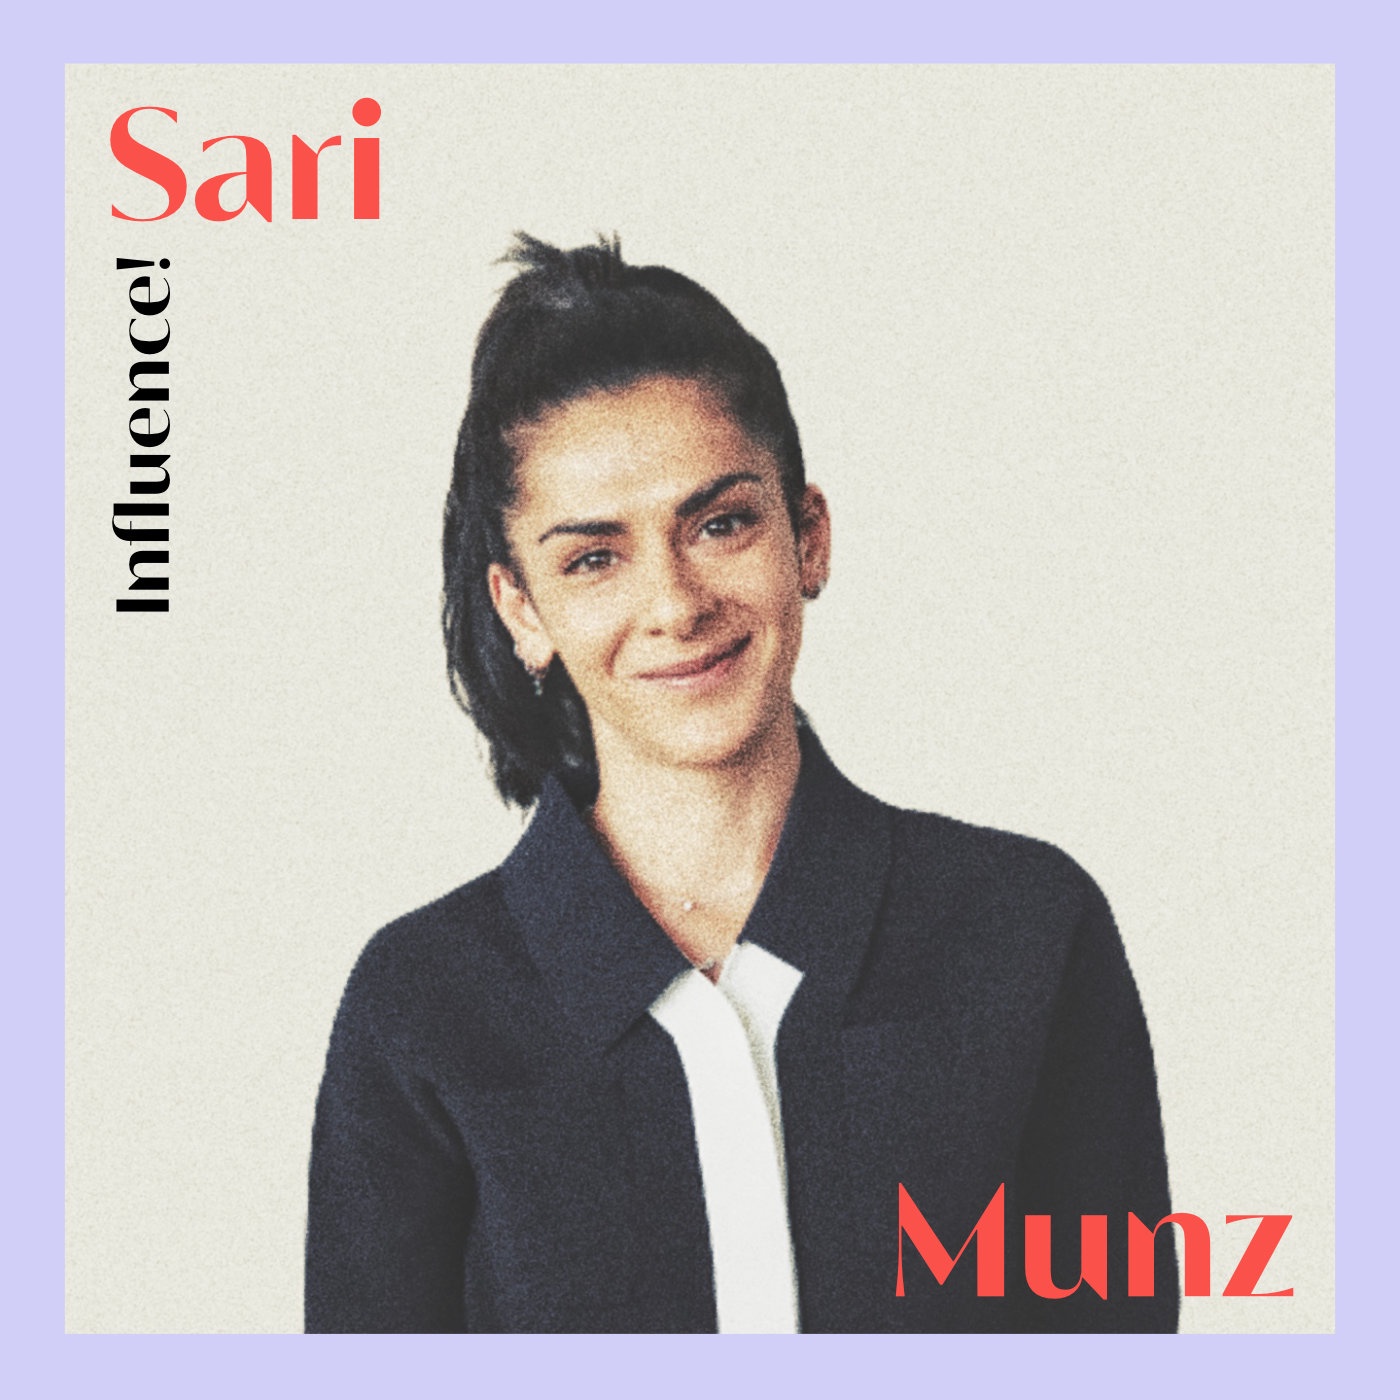 #82 | Sari Munz, wie schafft man Relevanz mit Social Media?